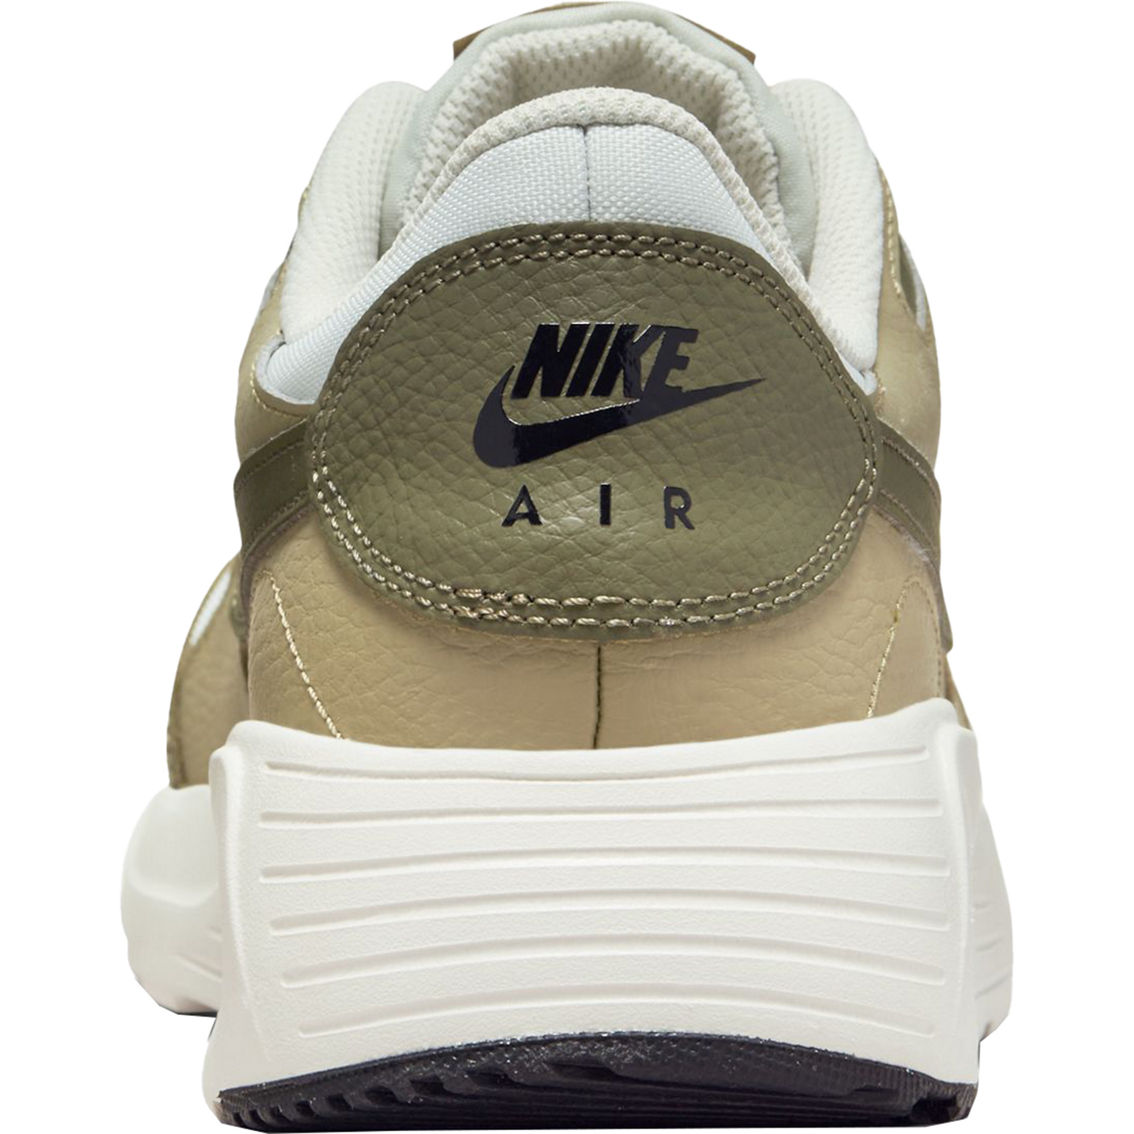 Nike Men's Air Max SC Sneakers - Image 6 of 8